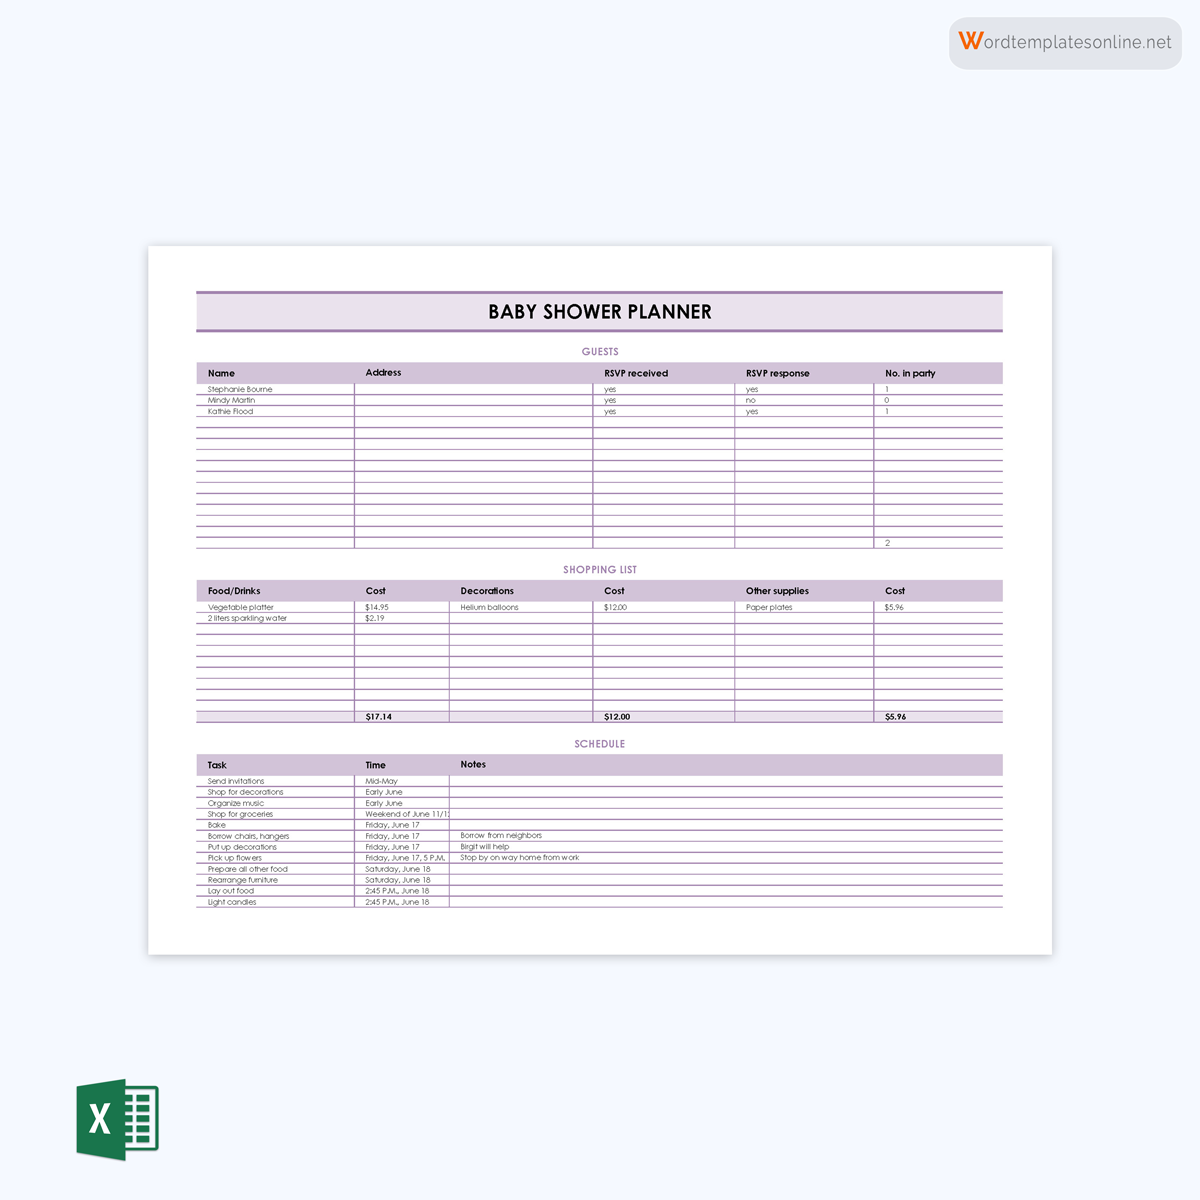 Baby shower checklist PDF
